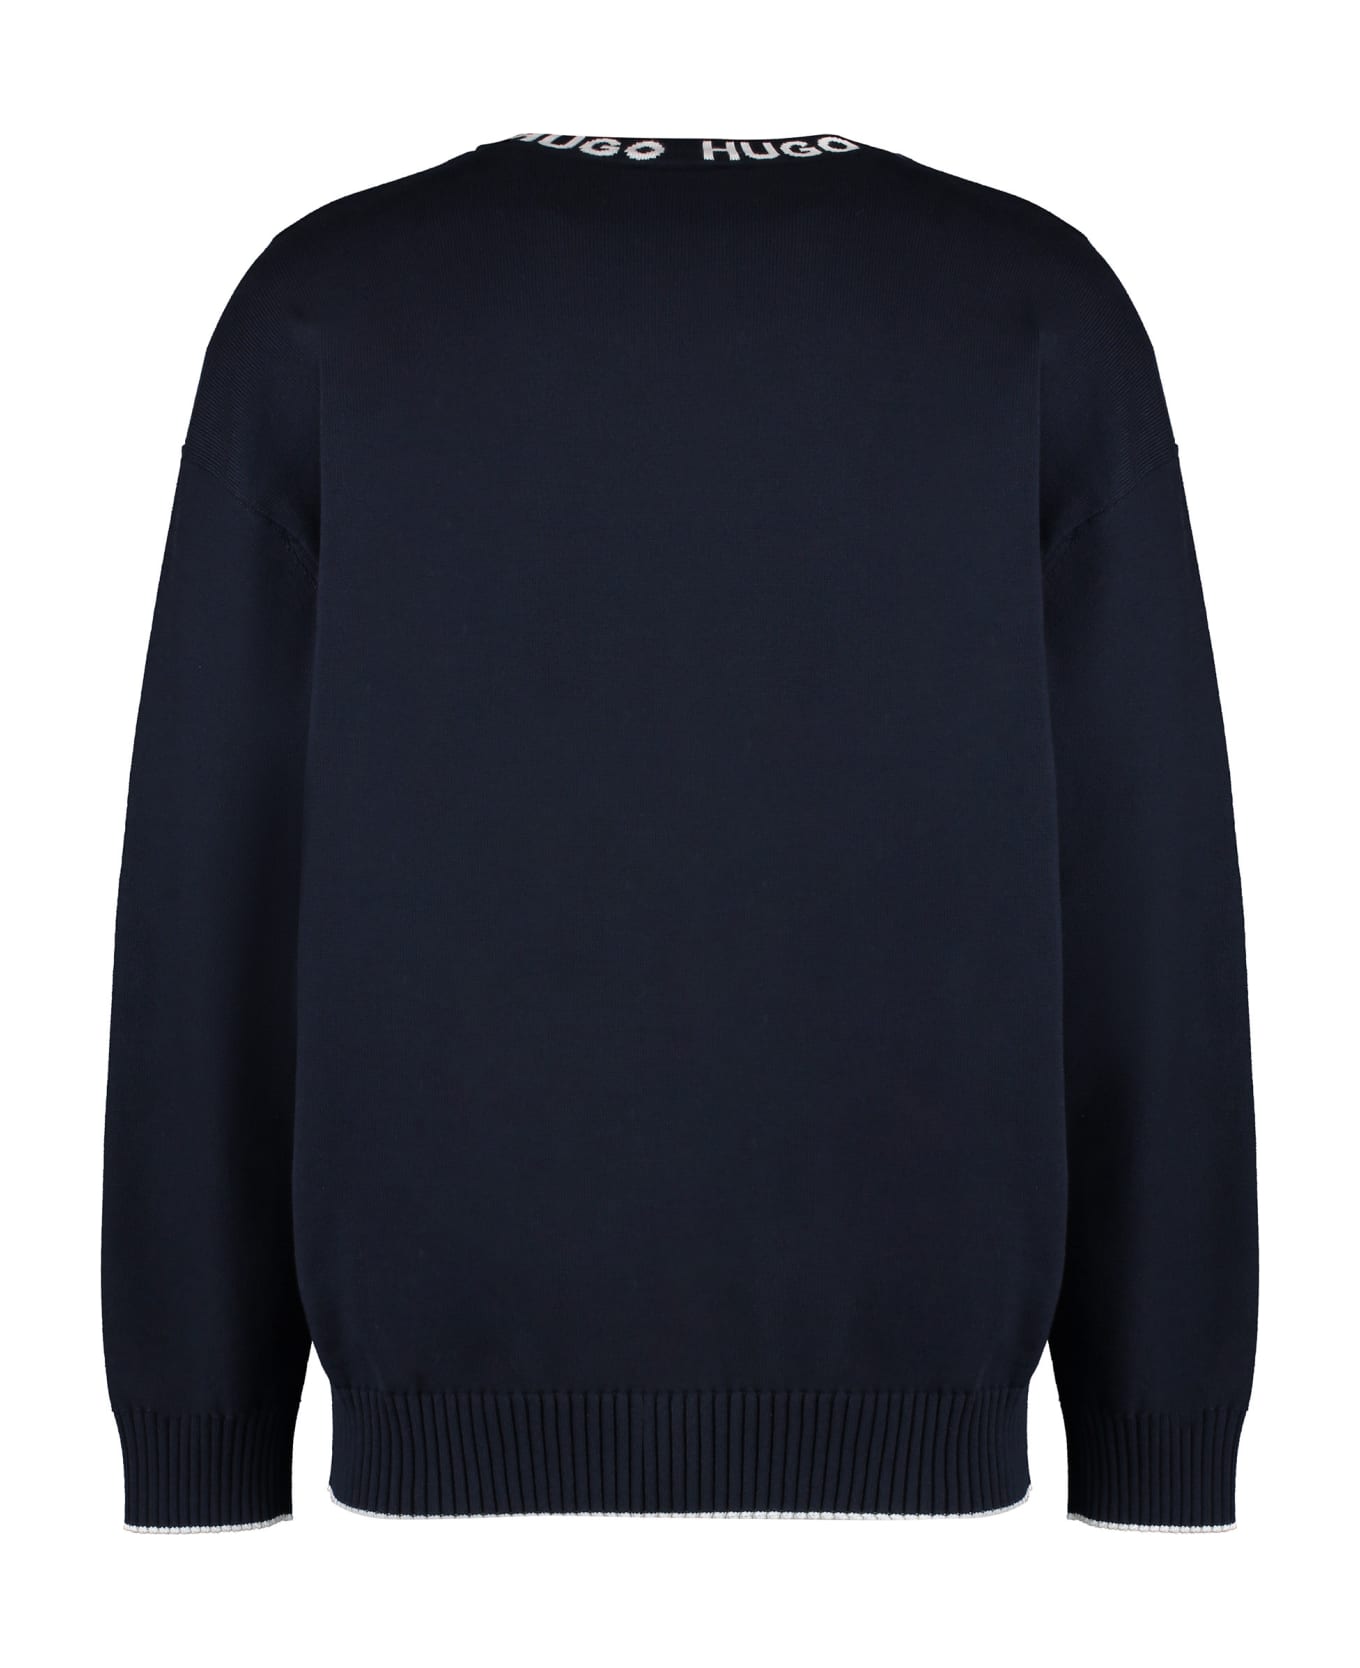 Hugo Boss Cotton Crew-neck Sweater - blue ニットウェア